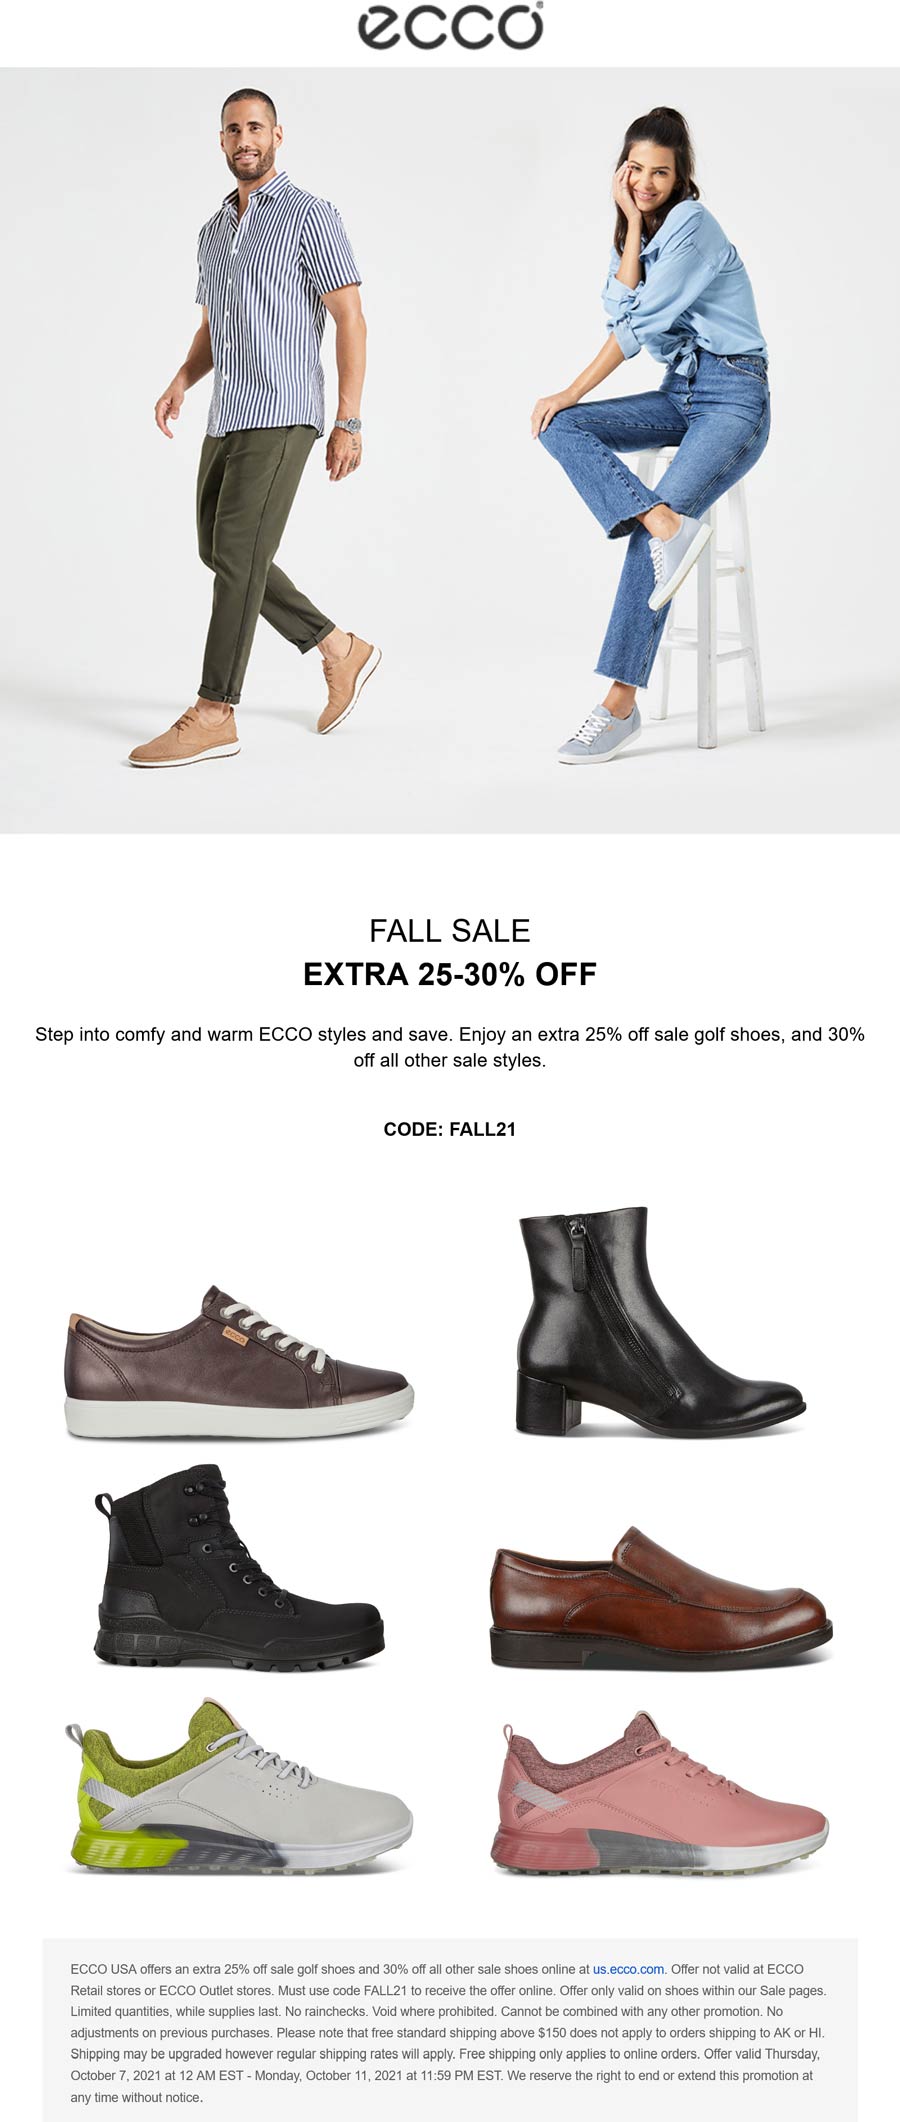 ECCO stores Coupon  Extra 25-30% off sale shoes at ECCO via promo code FALL21 #ecco 